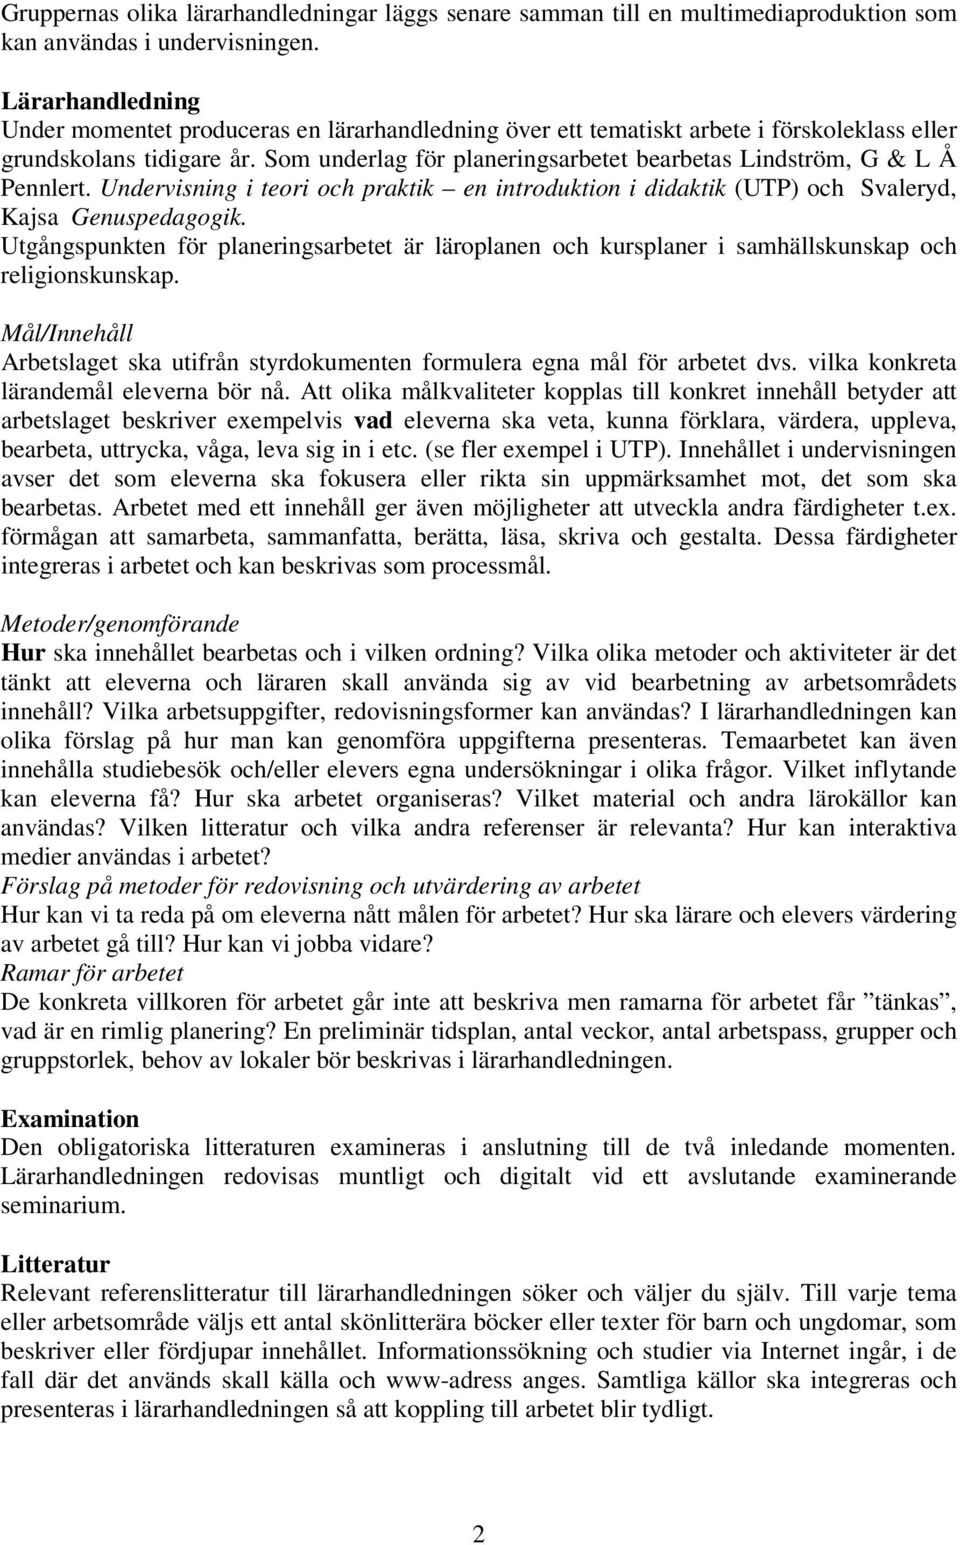 Som underlag för planeringsarbetet bearbetas Lindström, G & L Å Pennlert. Undervisning i teori och praktik en introduktion i didaktik (UTP) och Svaleryd, Kajsa Genuspedagogik.